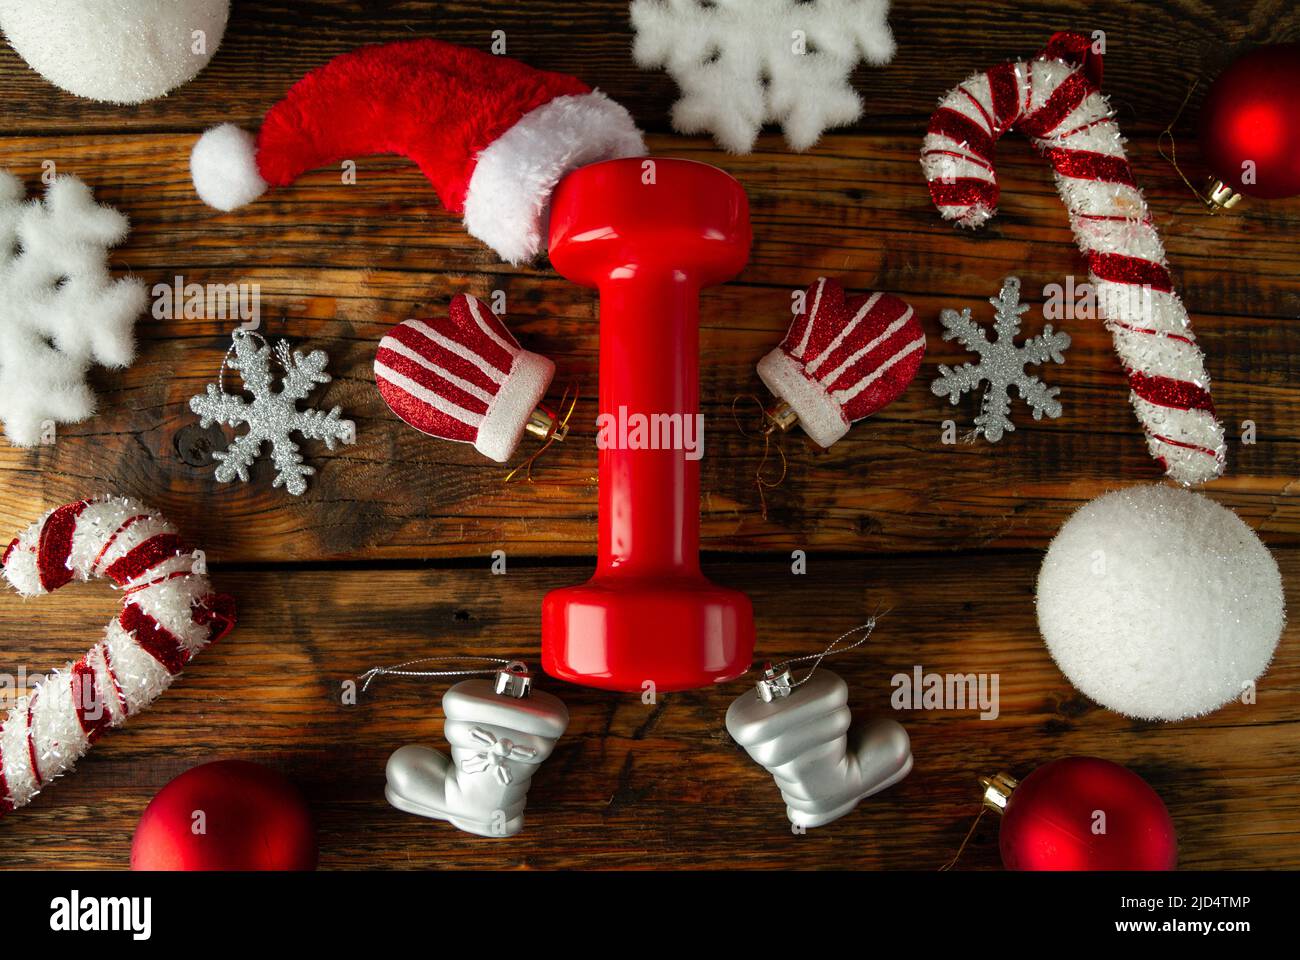 Rote Turnhantel, stilisiert als Weihnachtsmann. Hut oben. Hände, Beine mit Handschuh angeordnet, Stiefel Weihnachtsschmuck. Gesunde Fitness Urlaubskonzept. Stockfoto